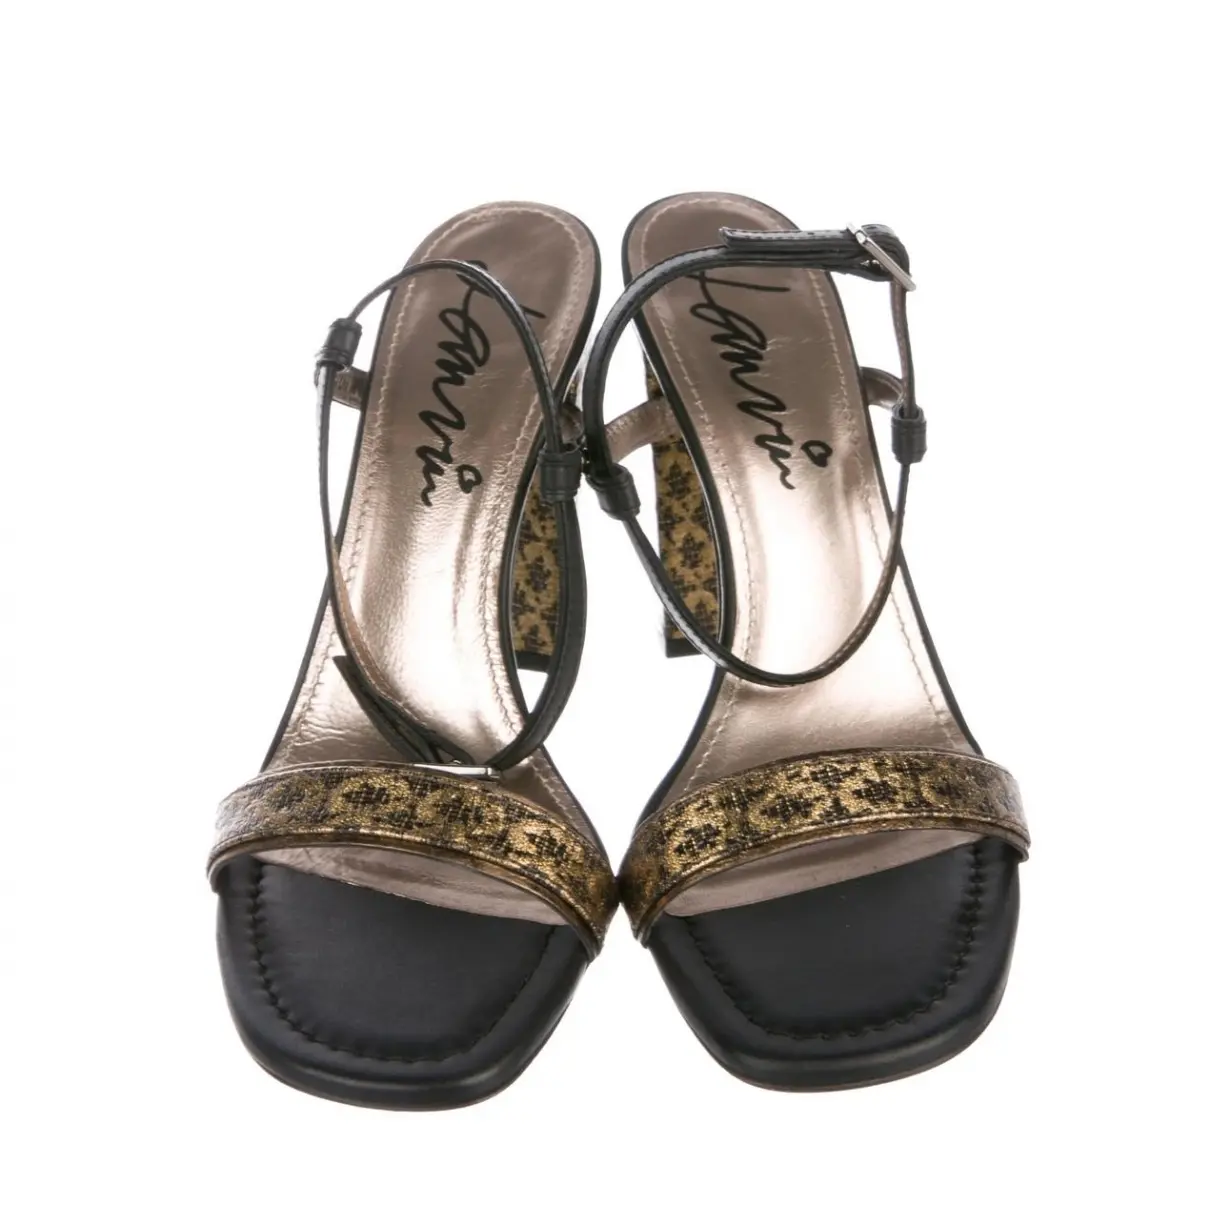 Lanvin Cloth sandals for sale